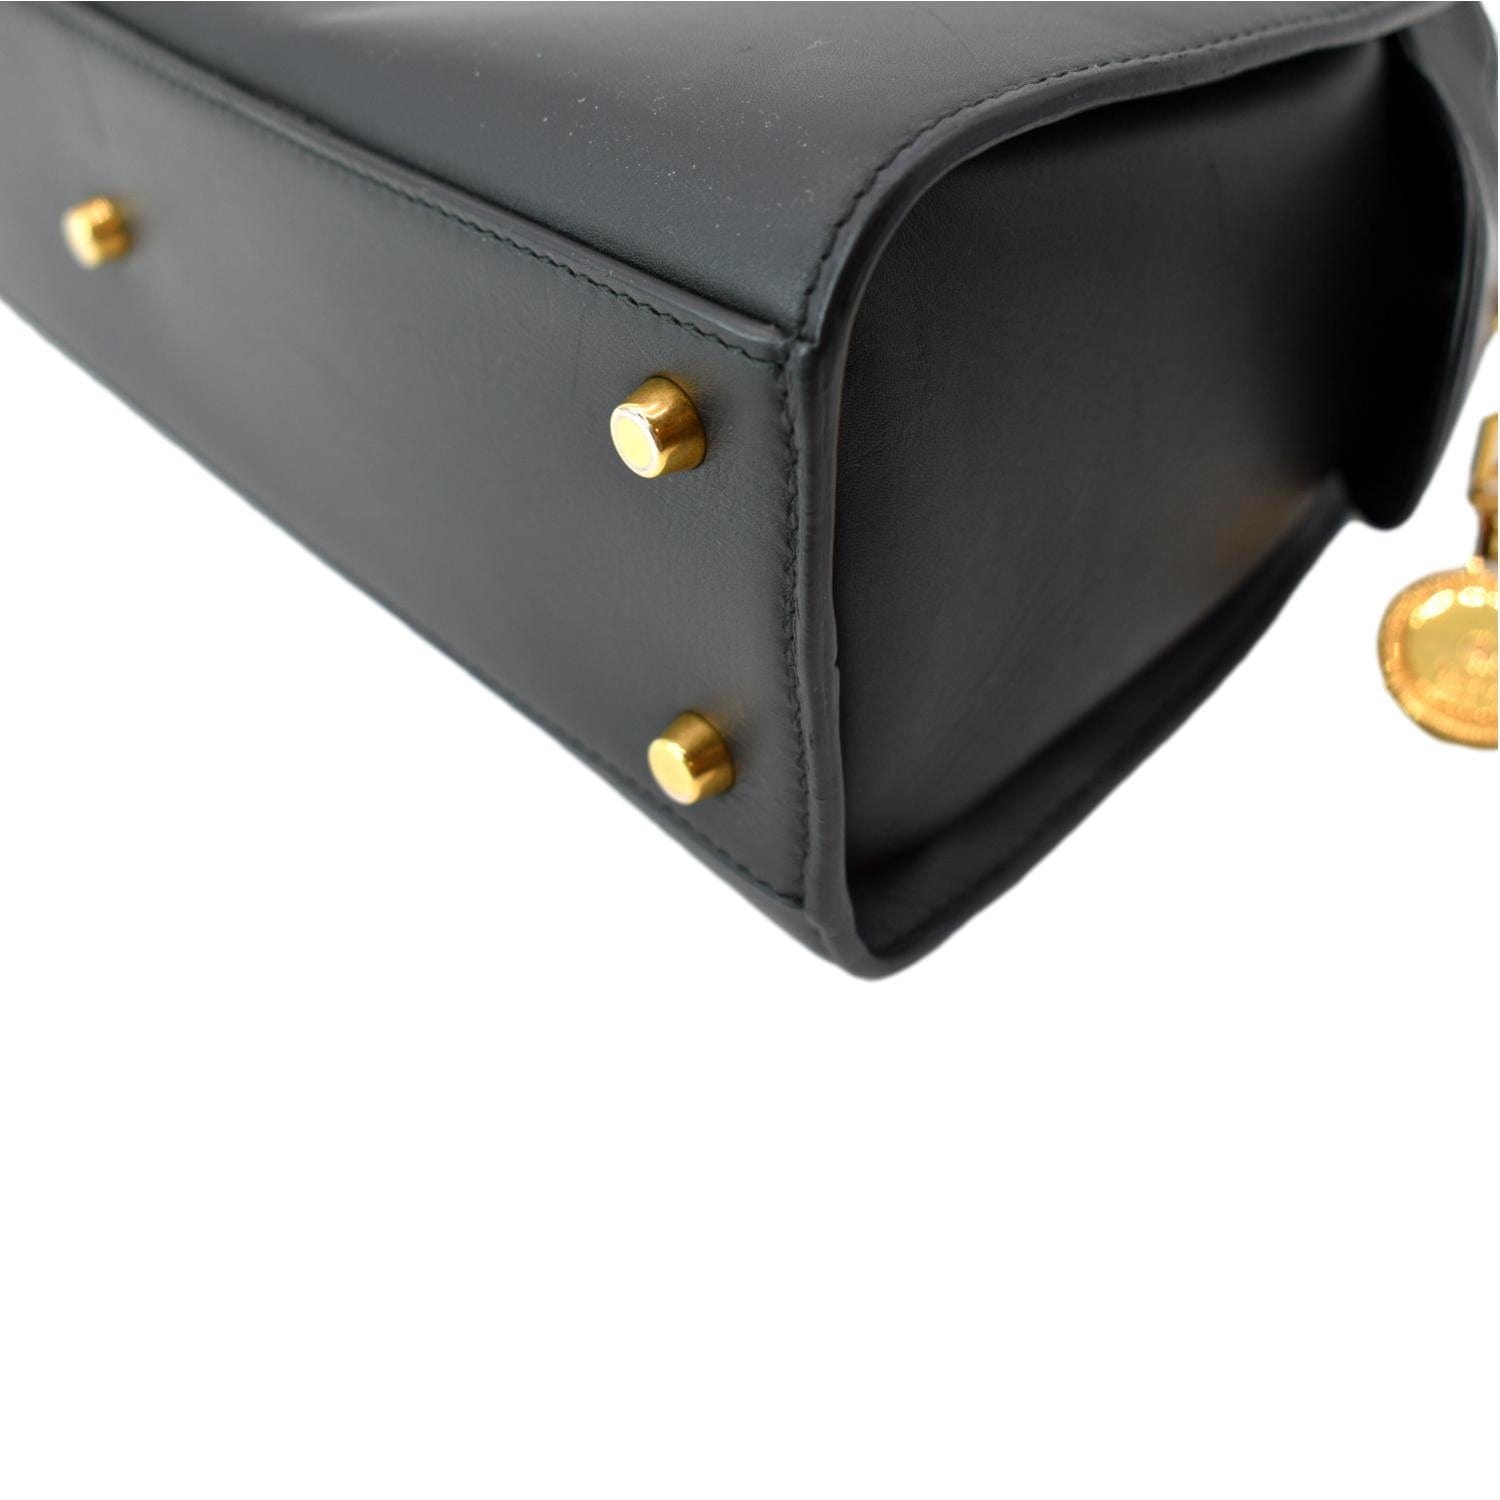 Vintage Black and Gold Bowling Bag 